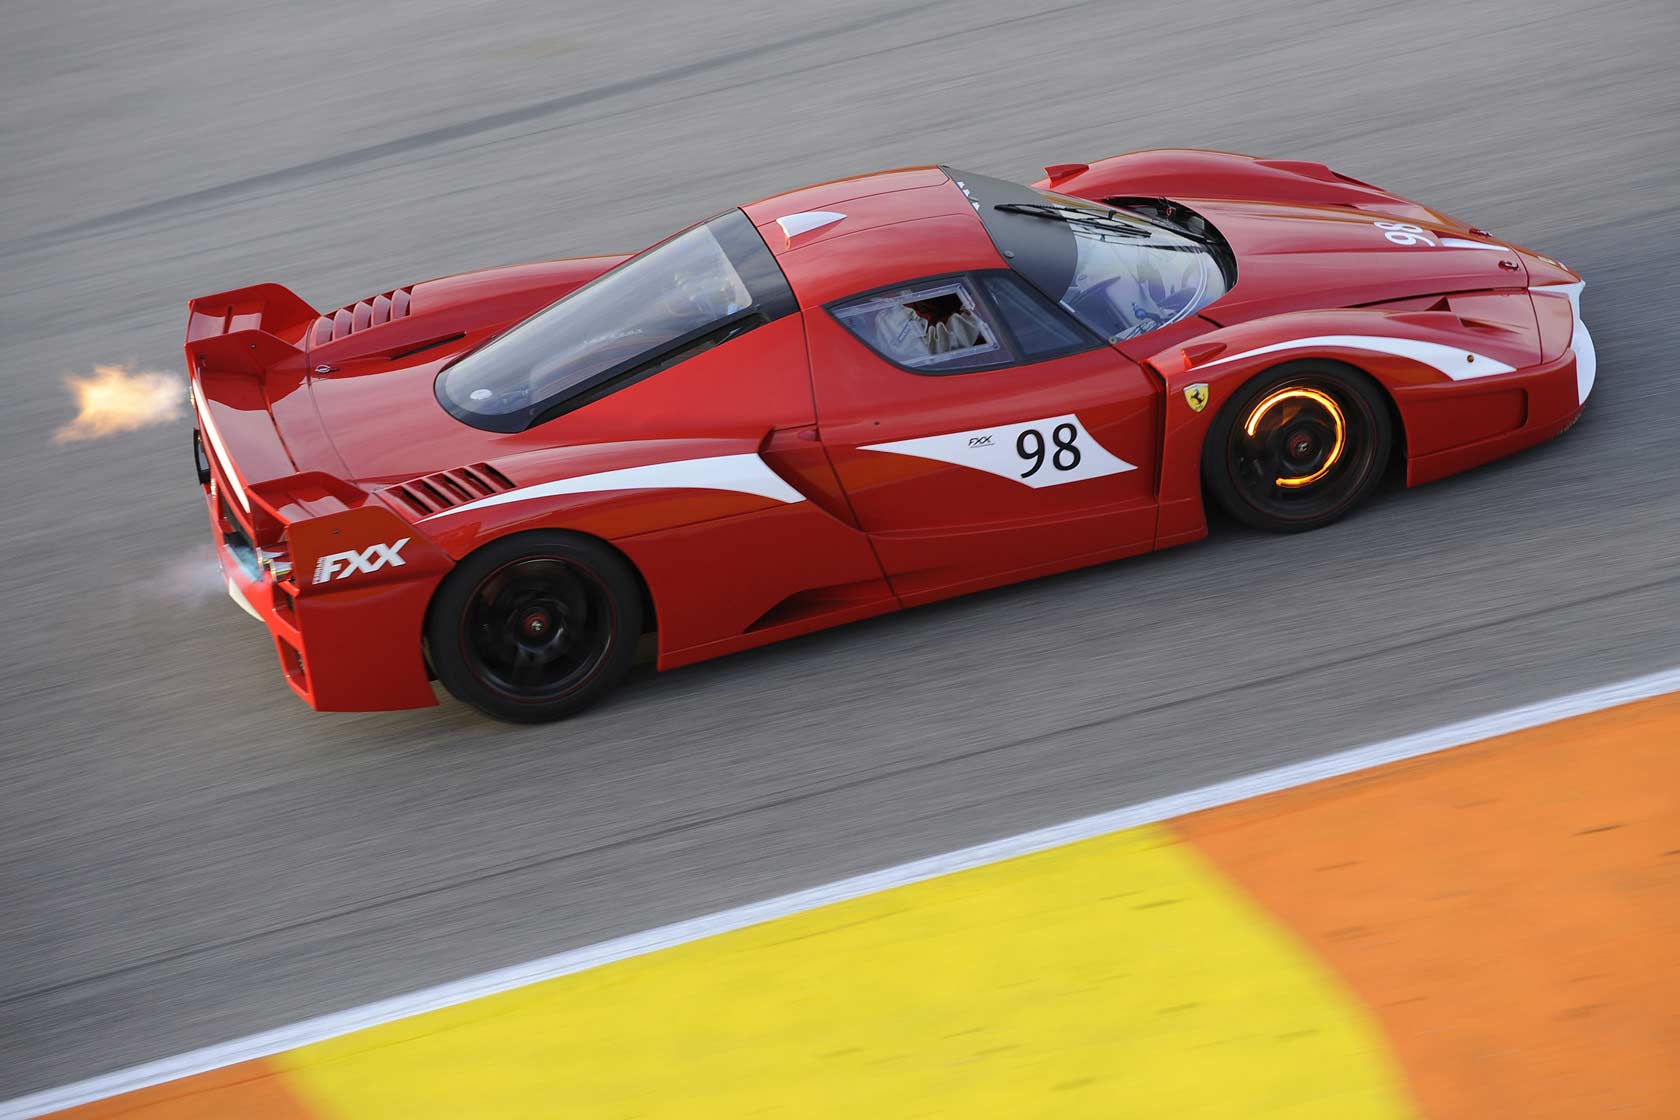 Ferrari fxx 2014 photo - 2